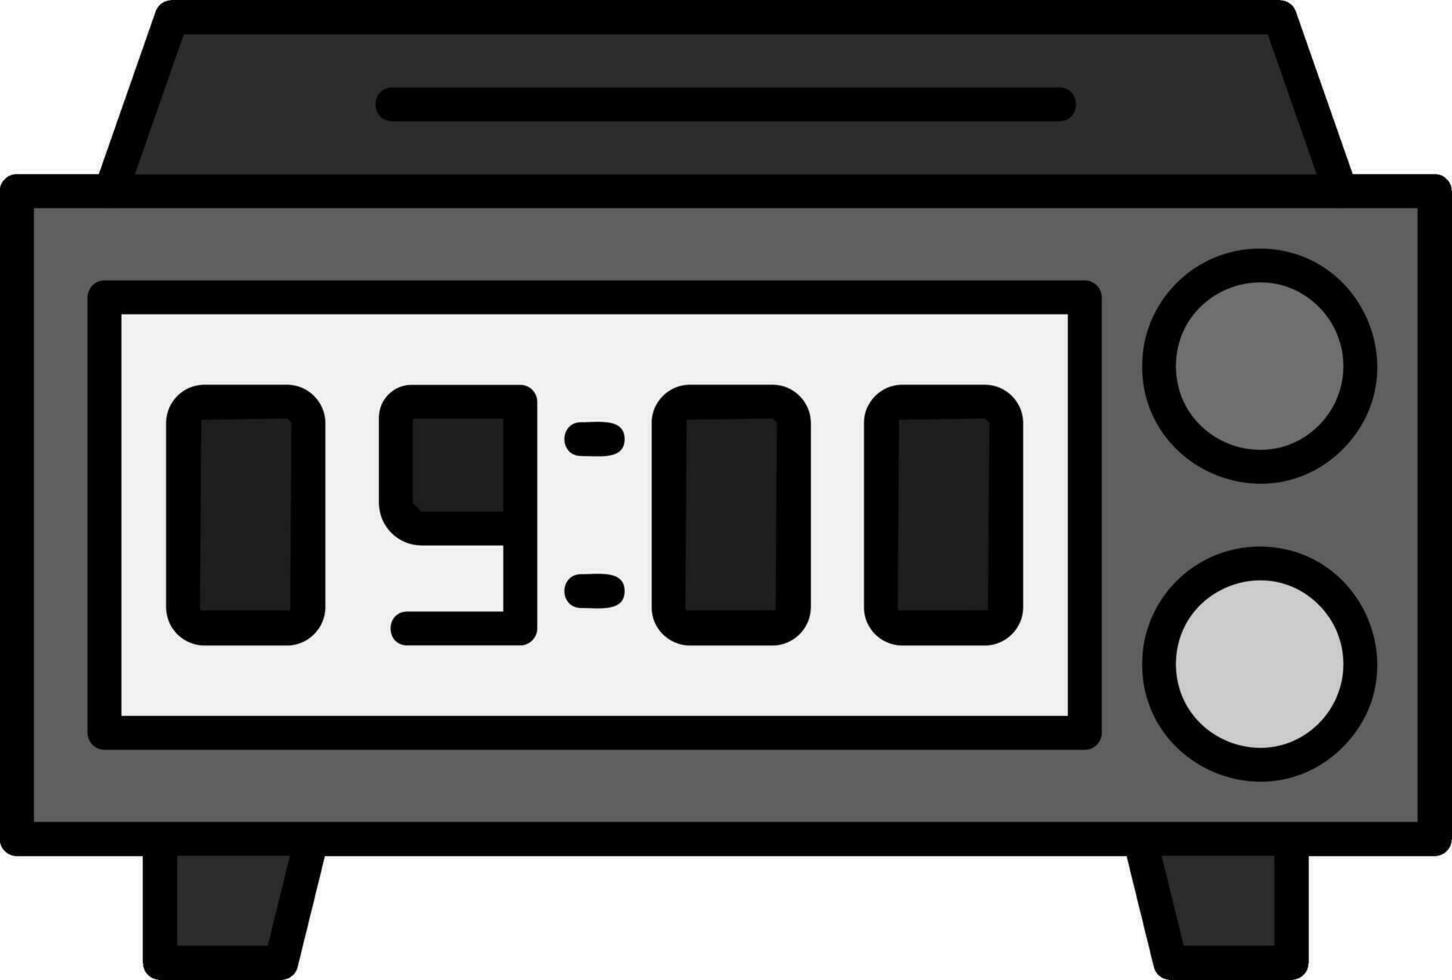 ícone de vetor de relógio digital